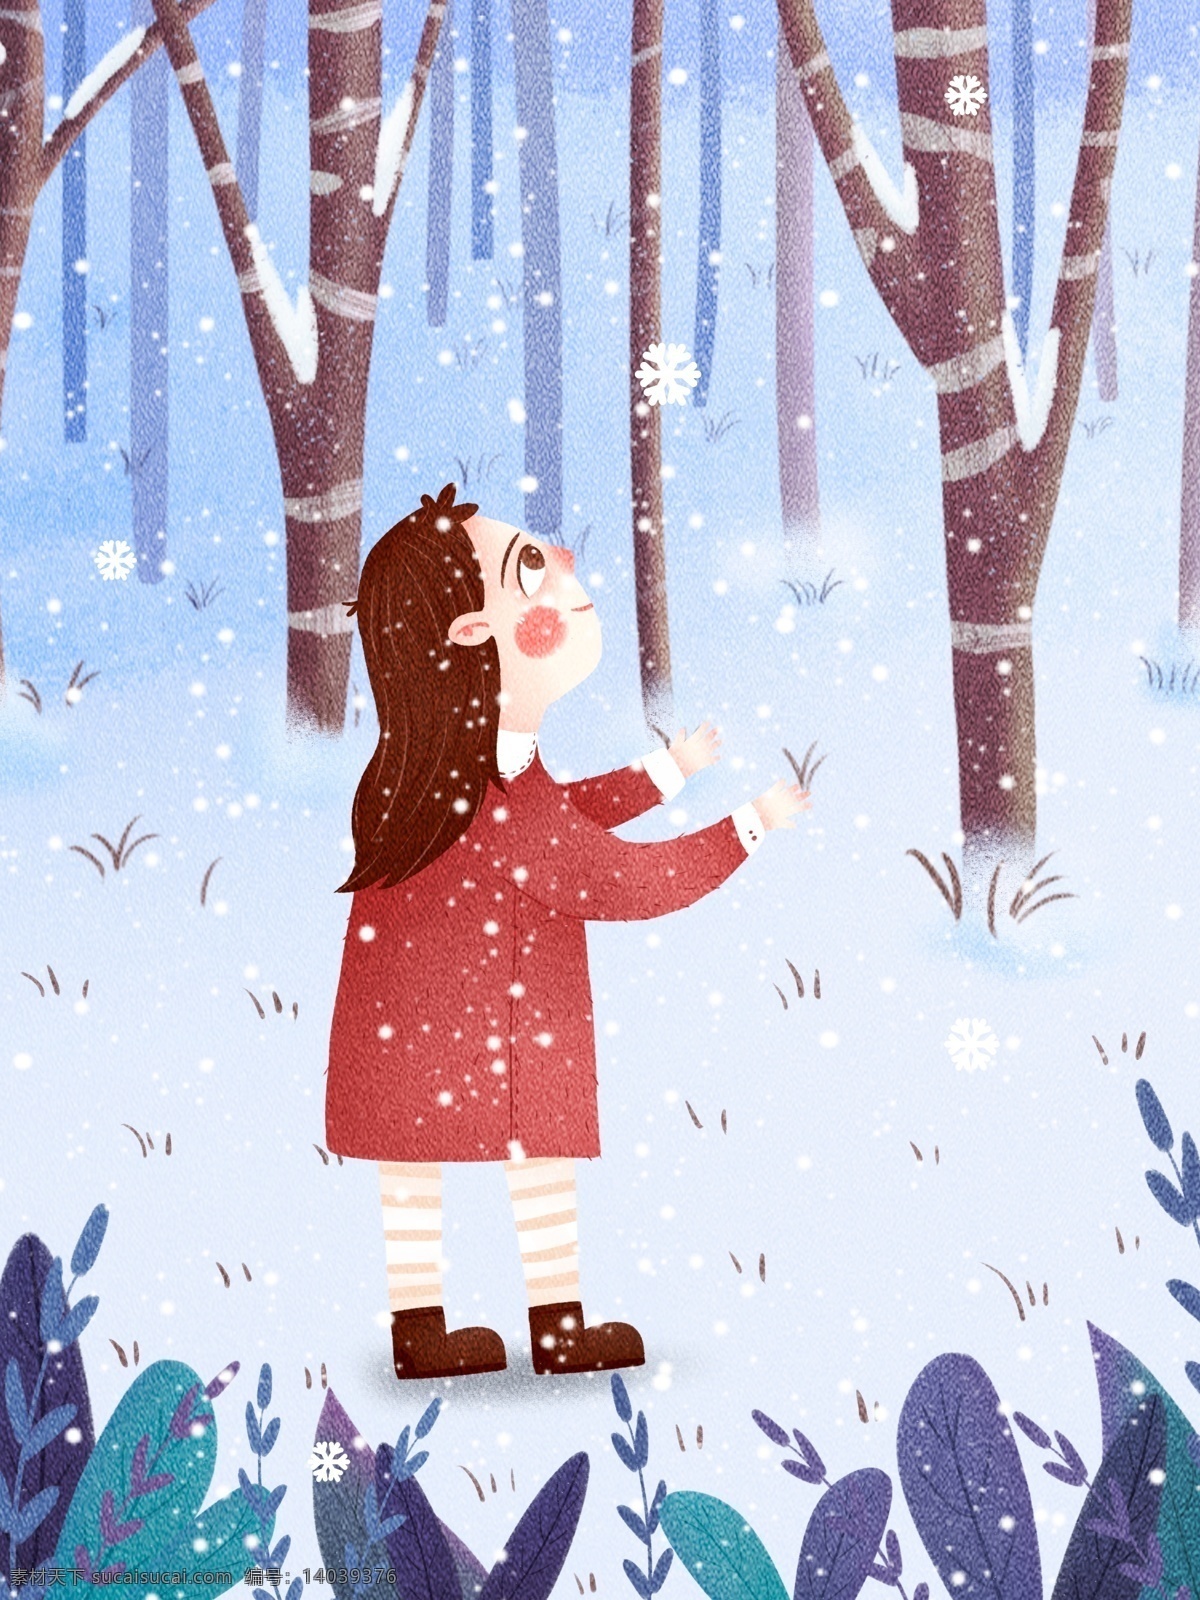 月 你好 雪花 插画 雪地 清新 唯美 12月你好 下雪 喜欢 飘雪